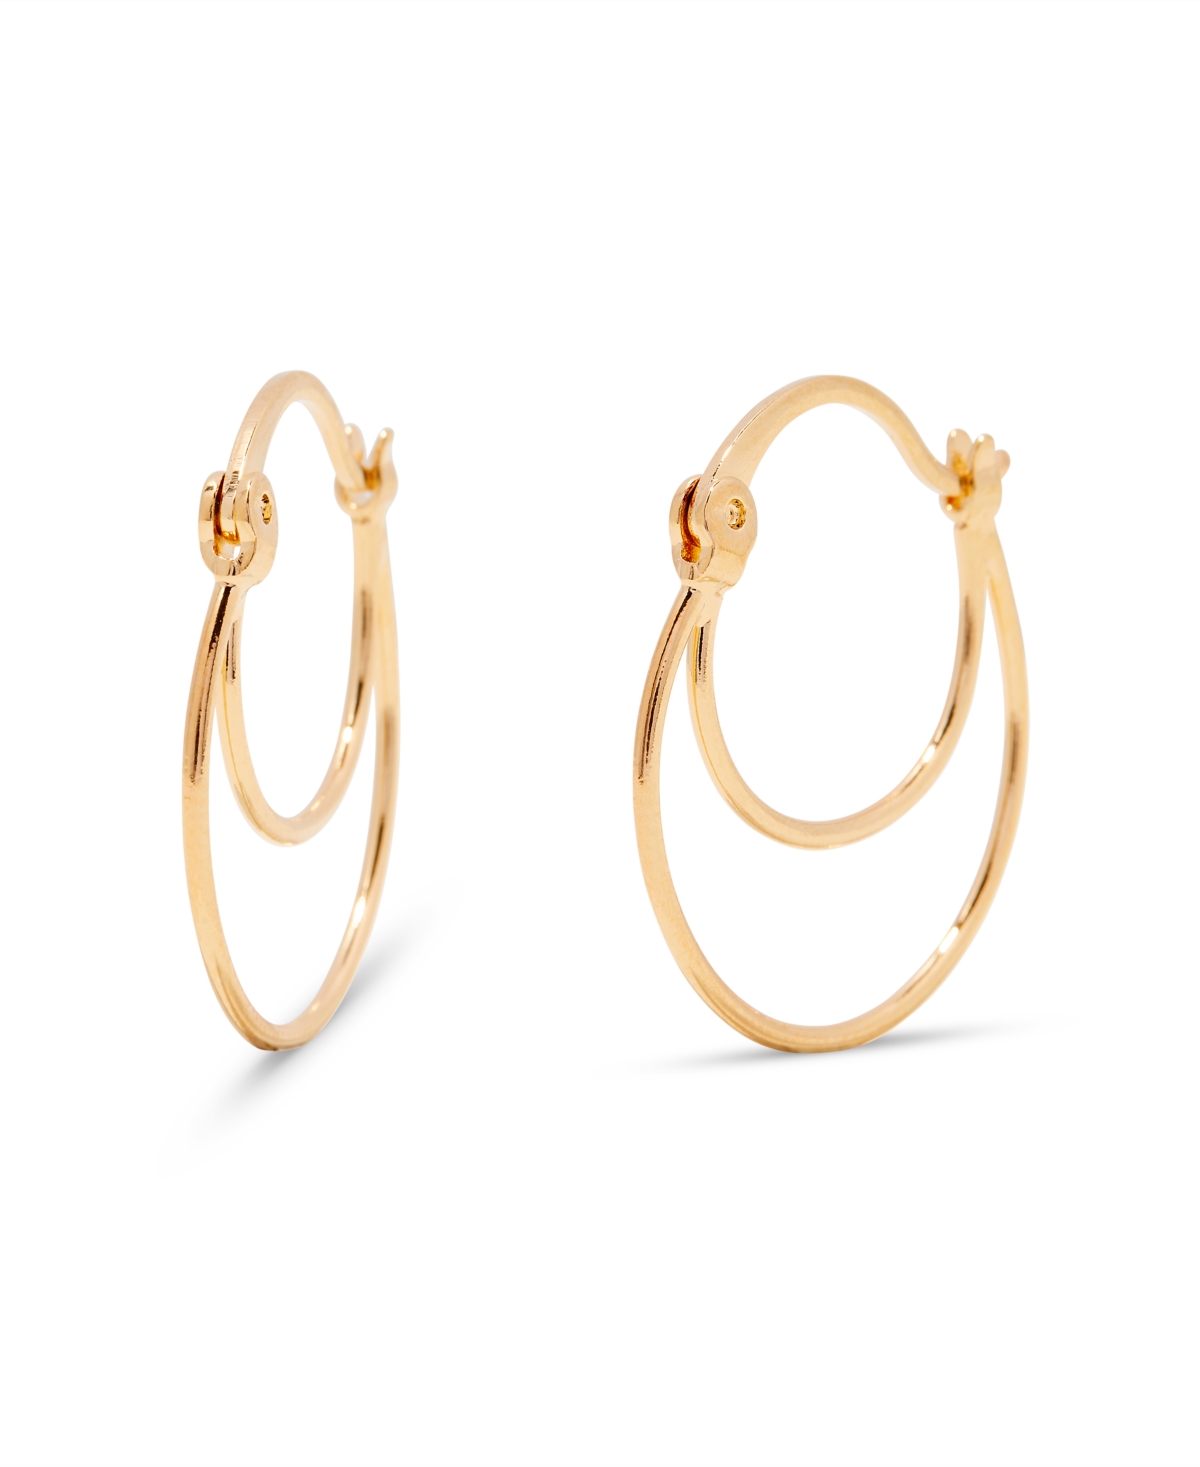 Brook & York "14k Gold" Catalina Hoop Earrings